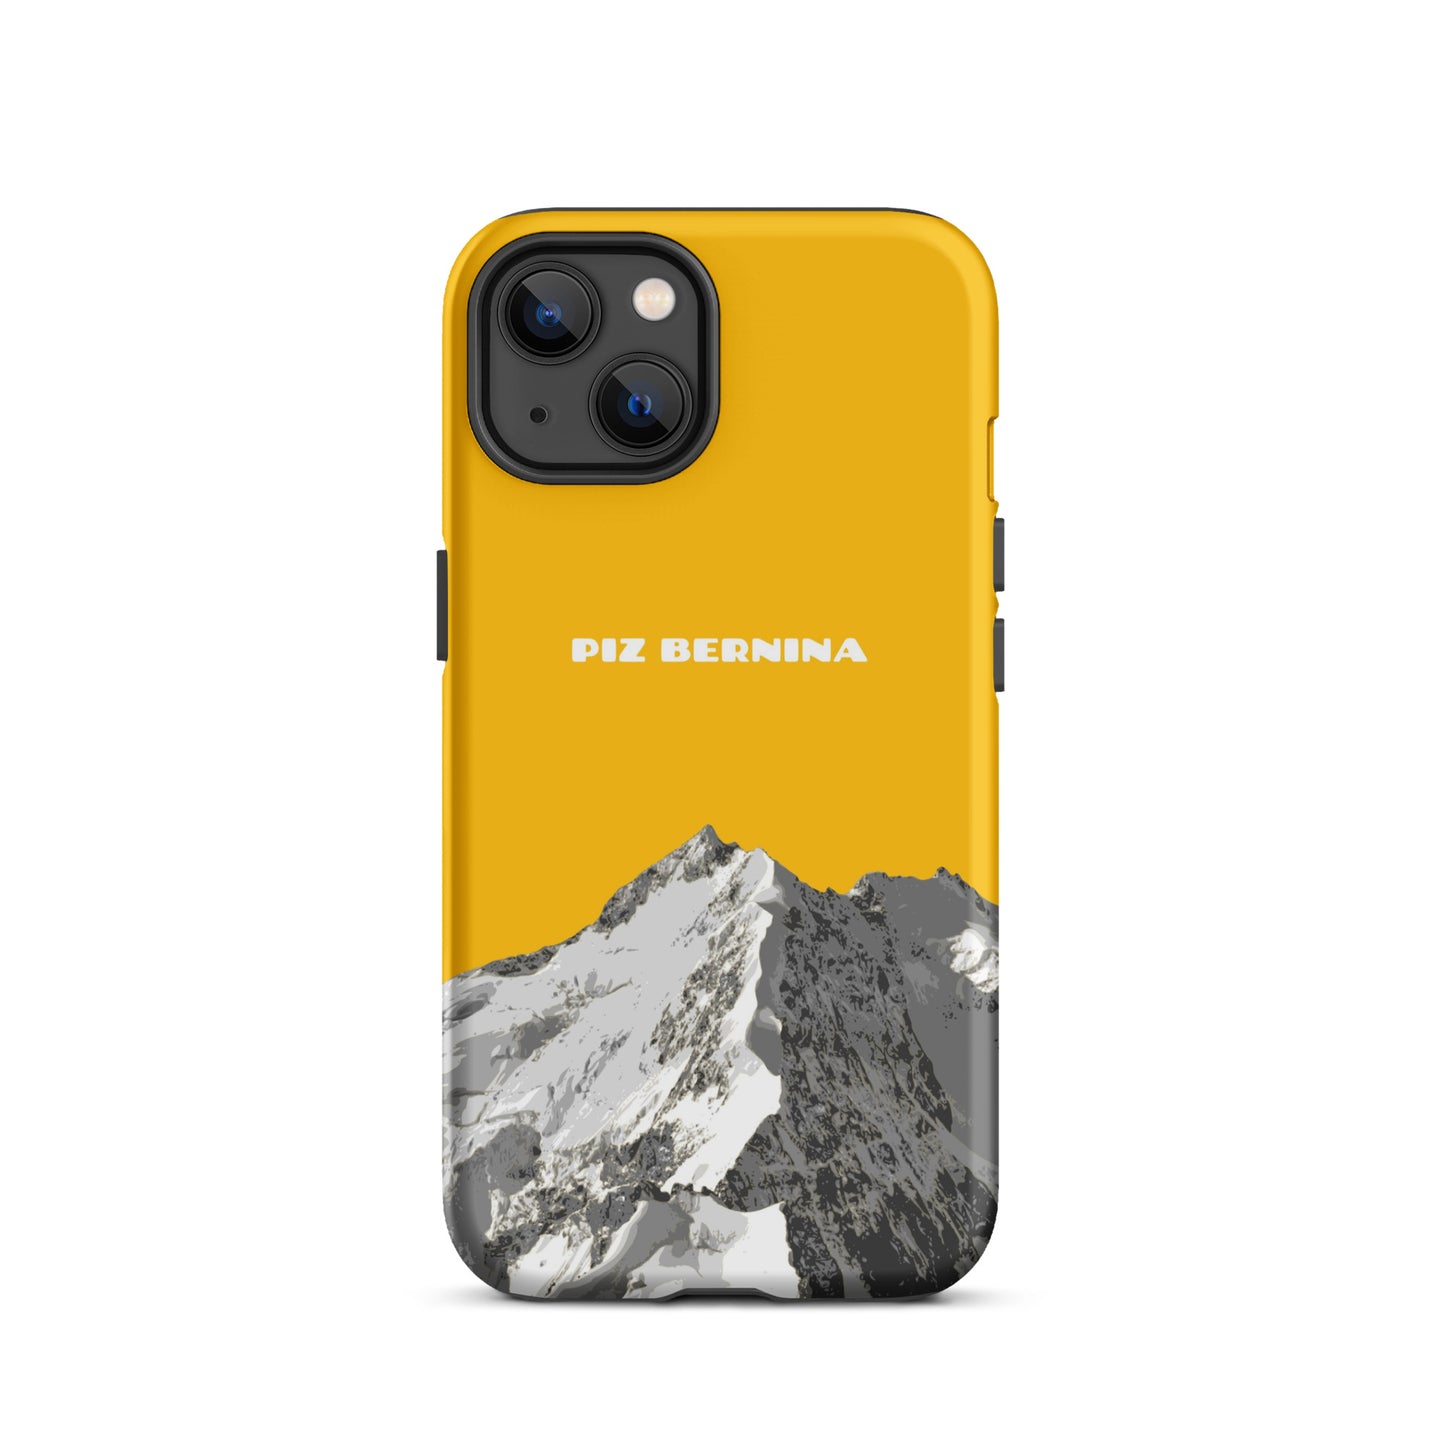 Hülle für das iPhone 13 von Apple in der Farbe Goldgelb, dass den Piz Bernina in Graubünden zeigt.